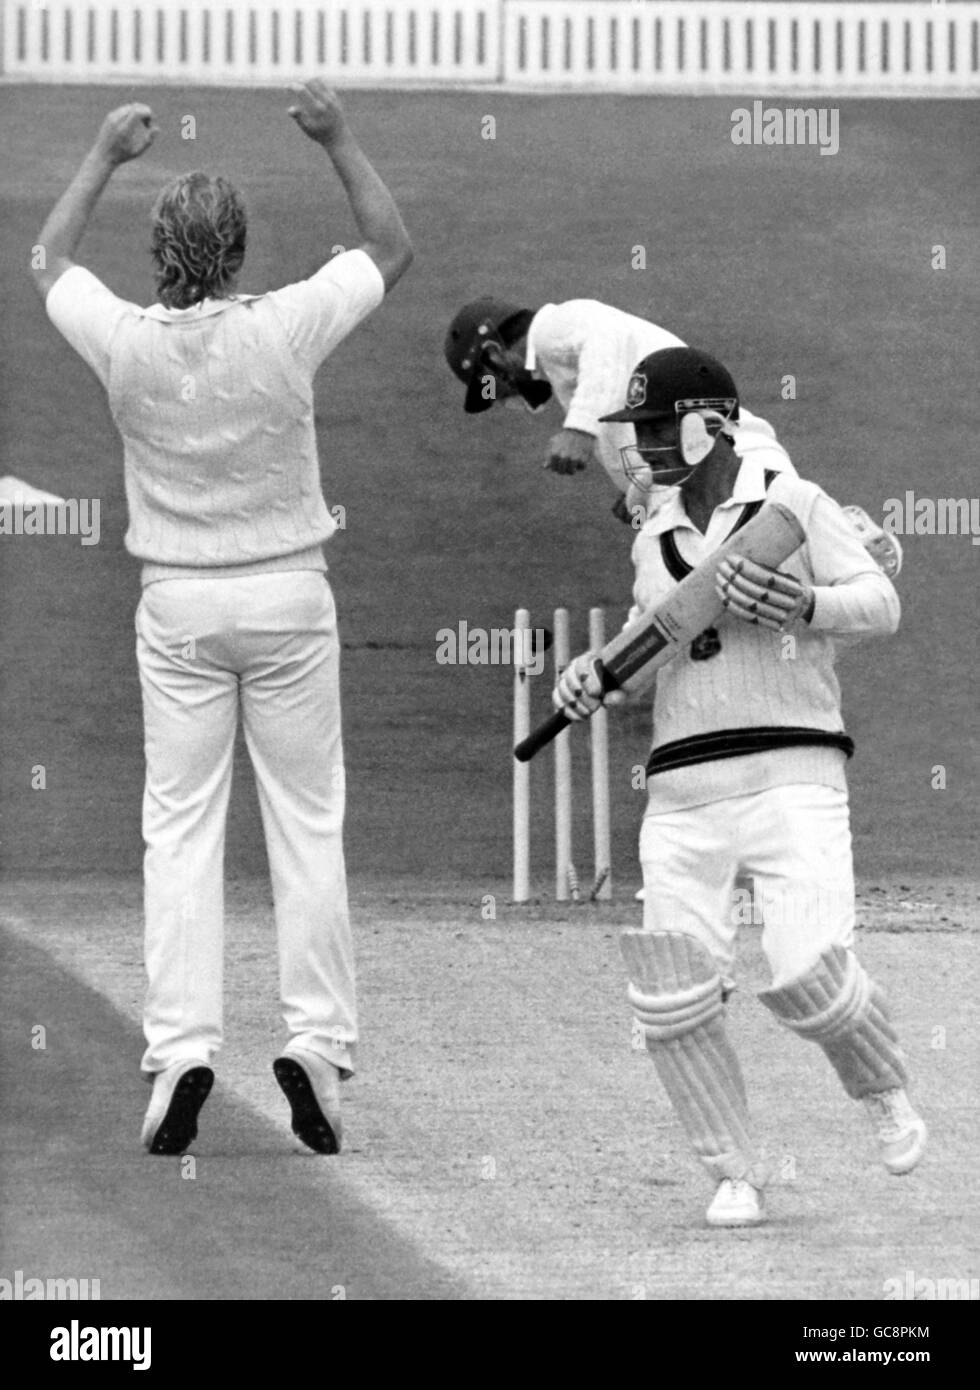 Cricket - Angleterre v Australie - Australie dans les îles britanniques 1985 (1er test) - Premier jour - Headingley, Leeds.Andrew Hilditch, batteur australien, est à la limite du temps Banque D'Images